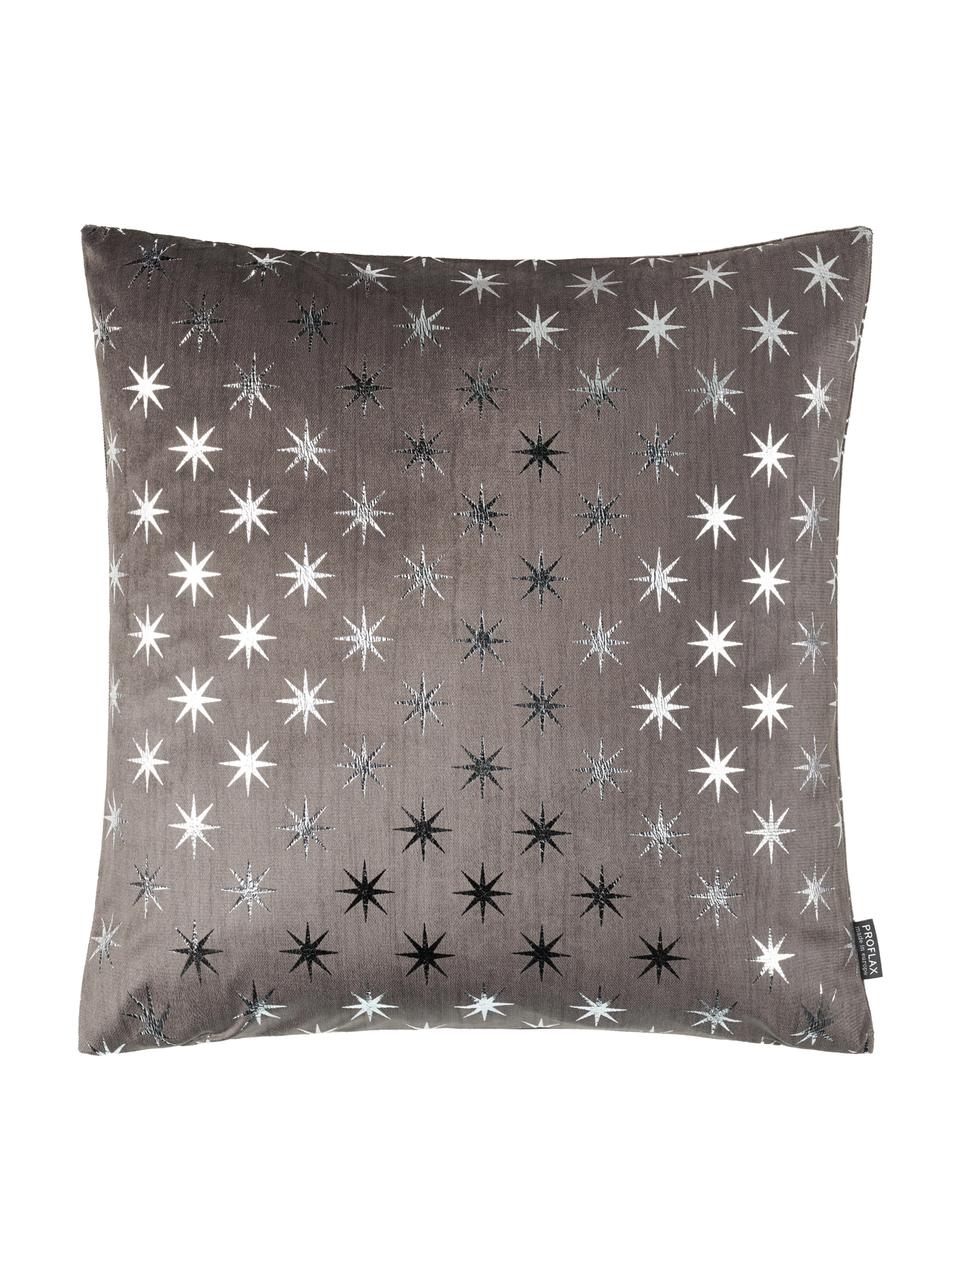 Kussenhoes Cosmos met zilveren sterren, Polyester, Grijs, zilverkleurig, 40 x 40 cm